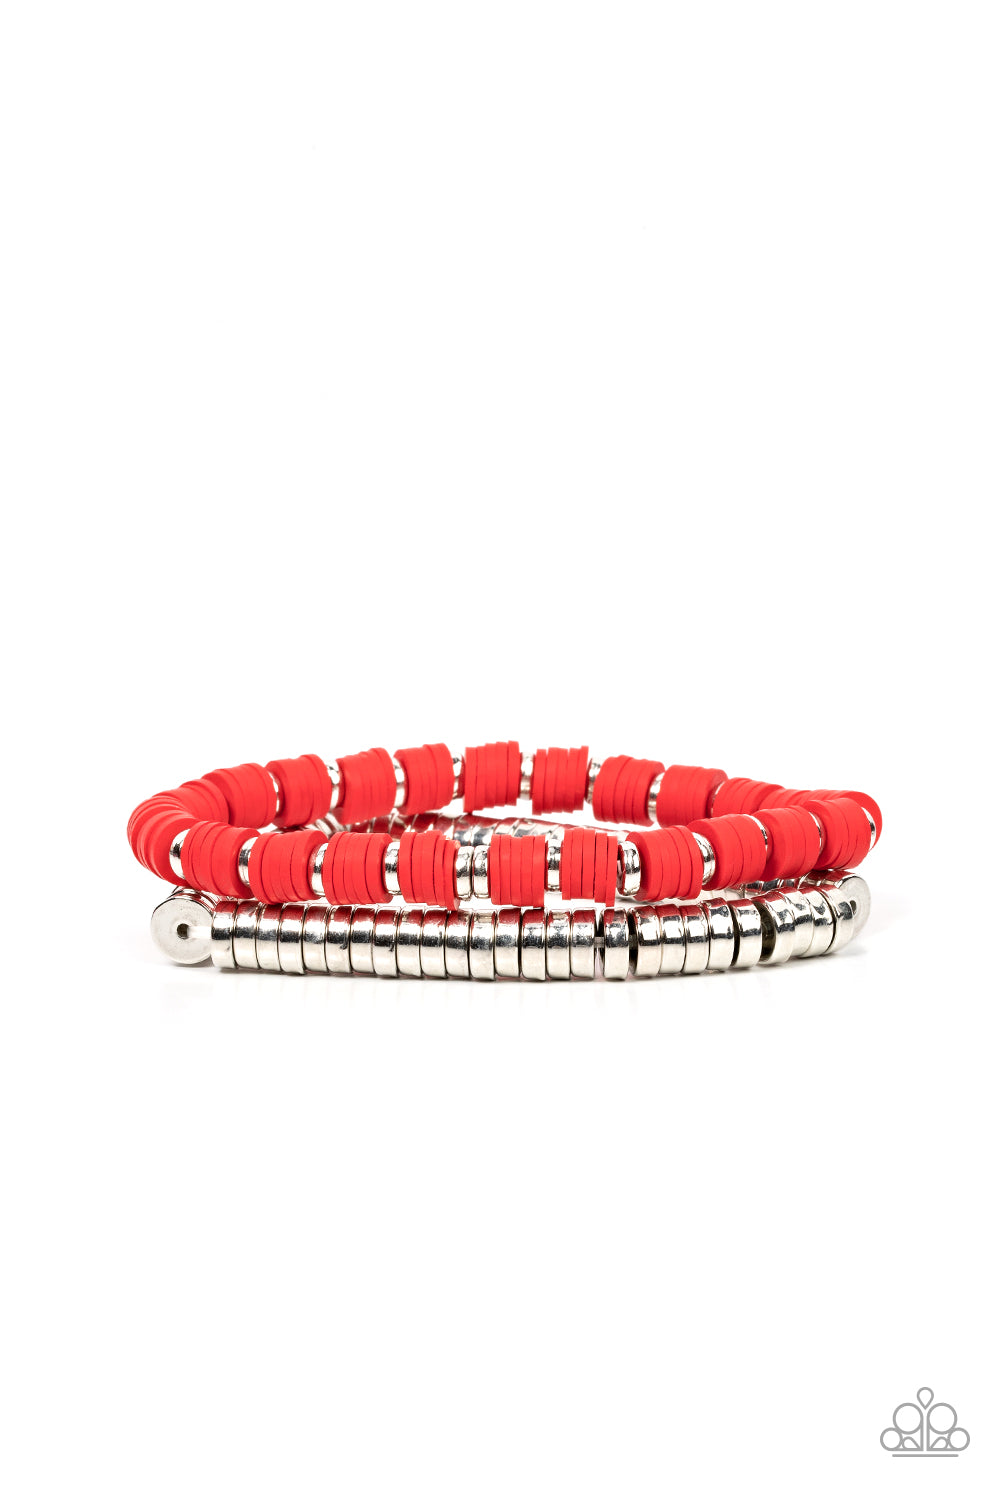 Catalina Marina Red Bracelet